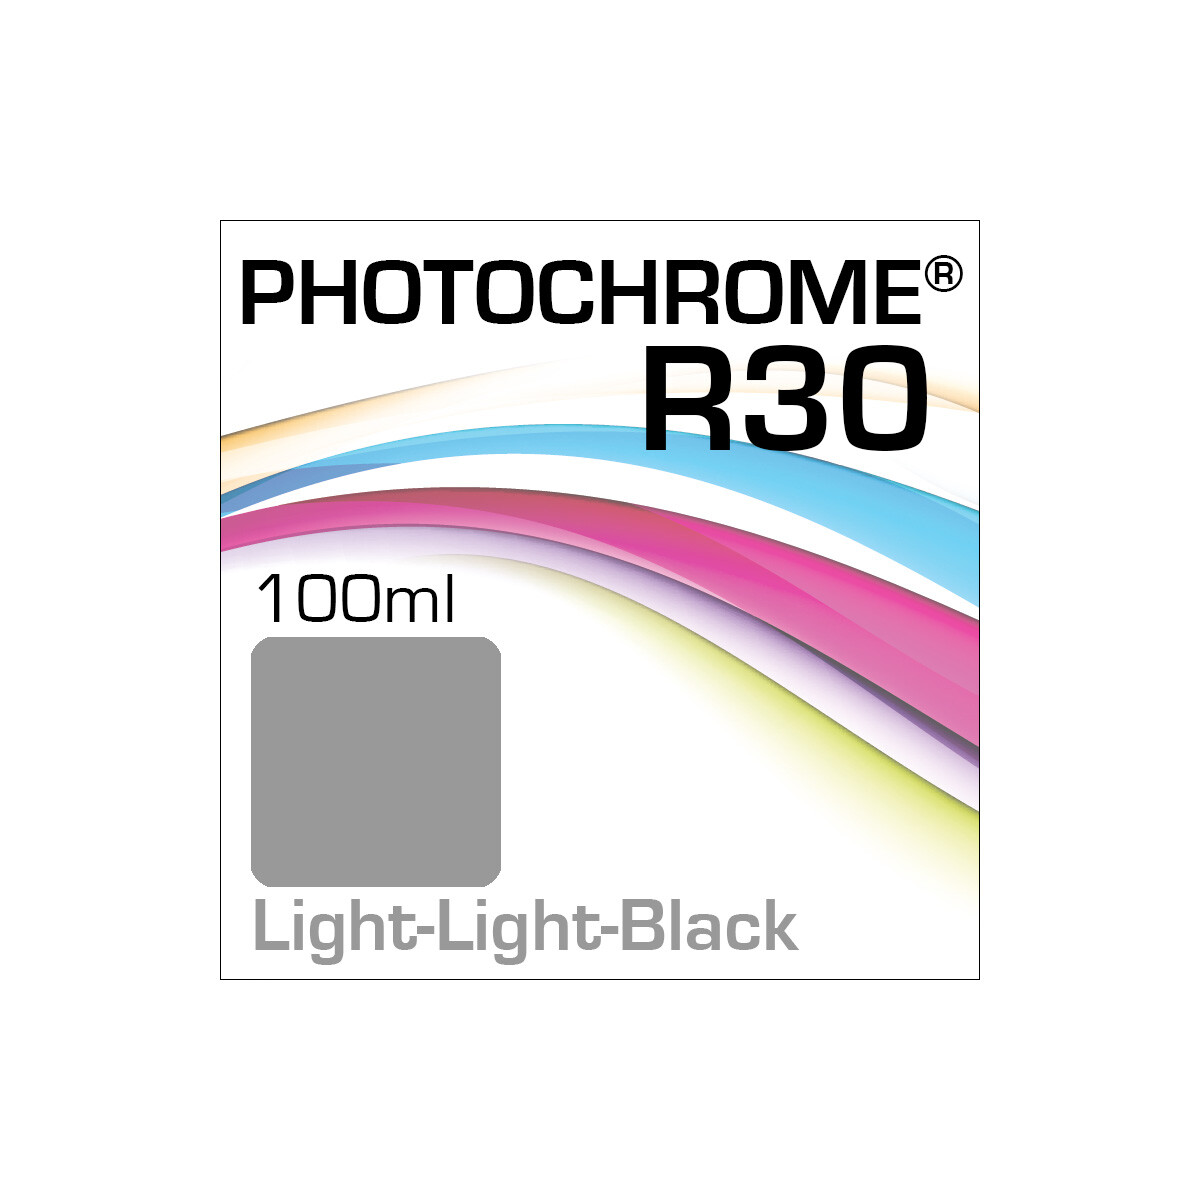 Lyson Photochrome R30 Bottle Light-Light-Black 100ml (EOL)